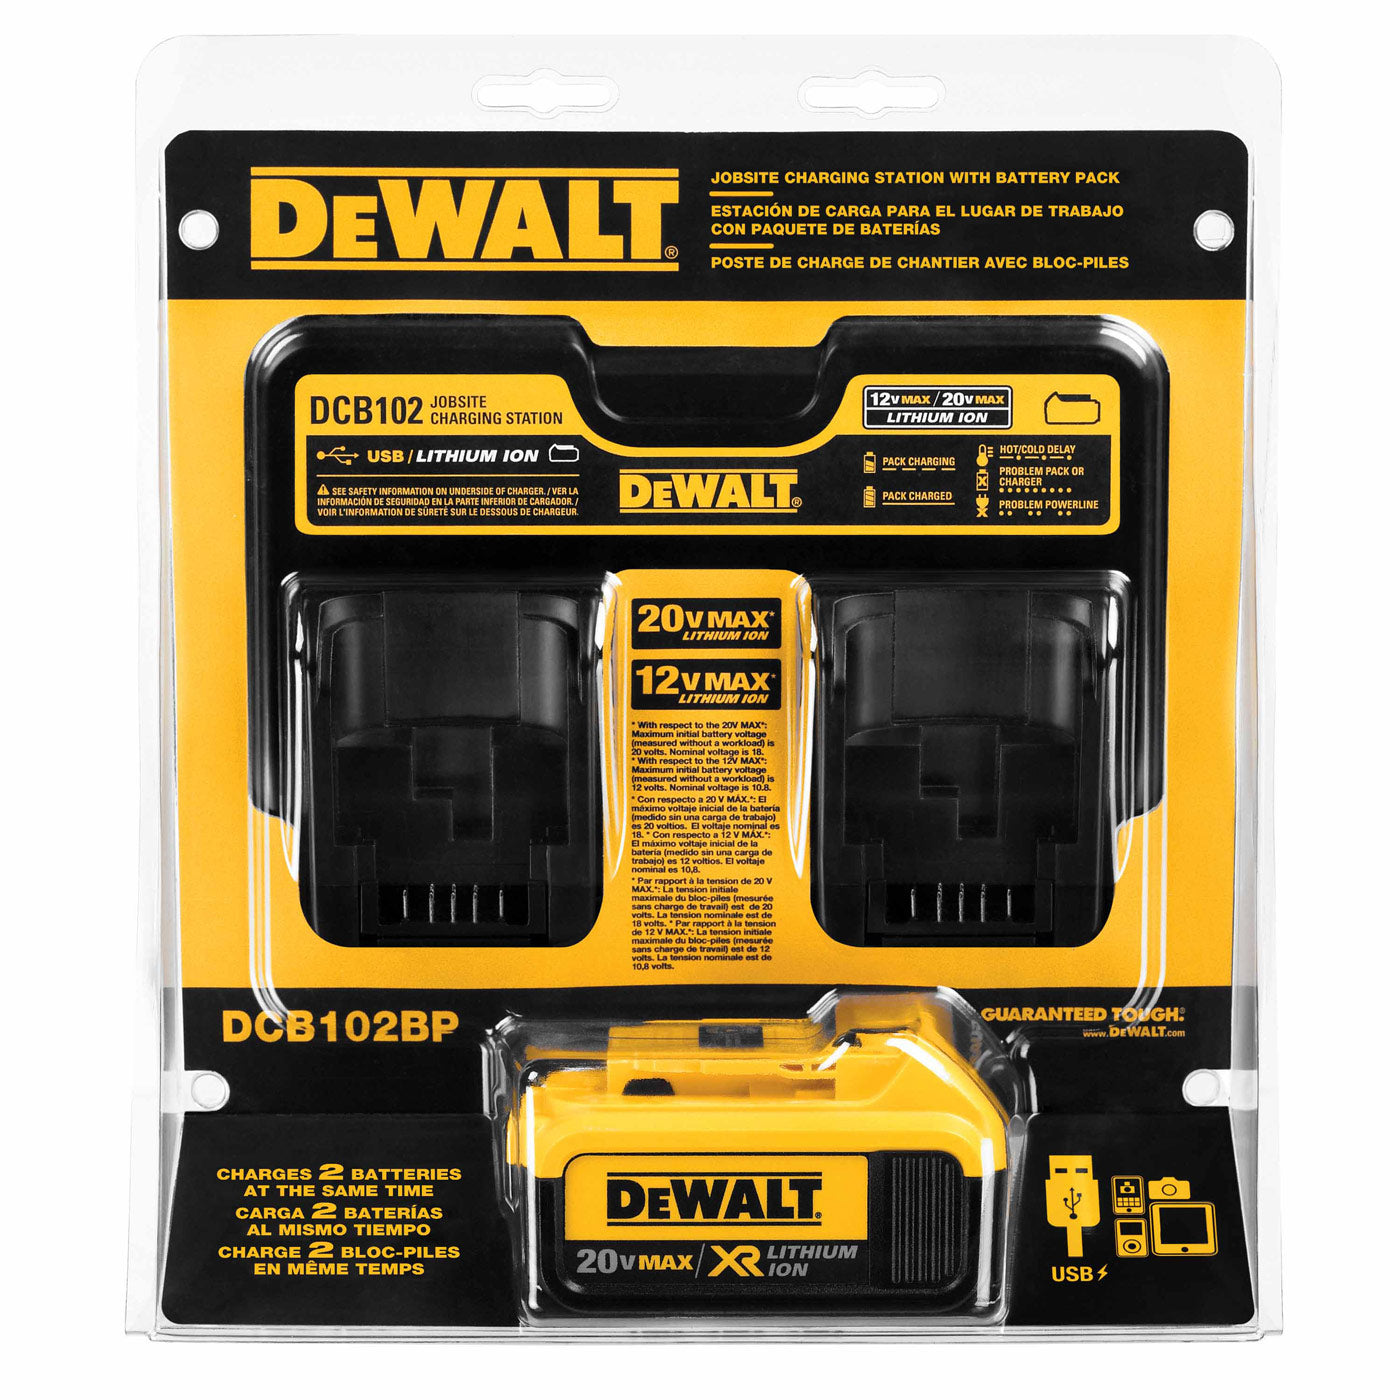 DeWalt DCB205-2CK 20 Volt 5 Amp Starter Kit Battery DCB115 Charger